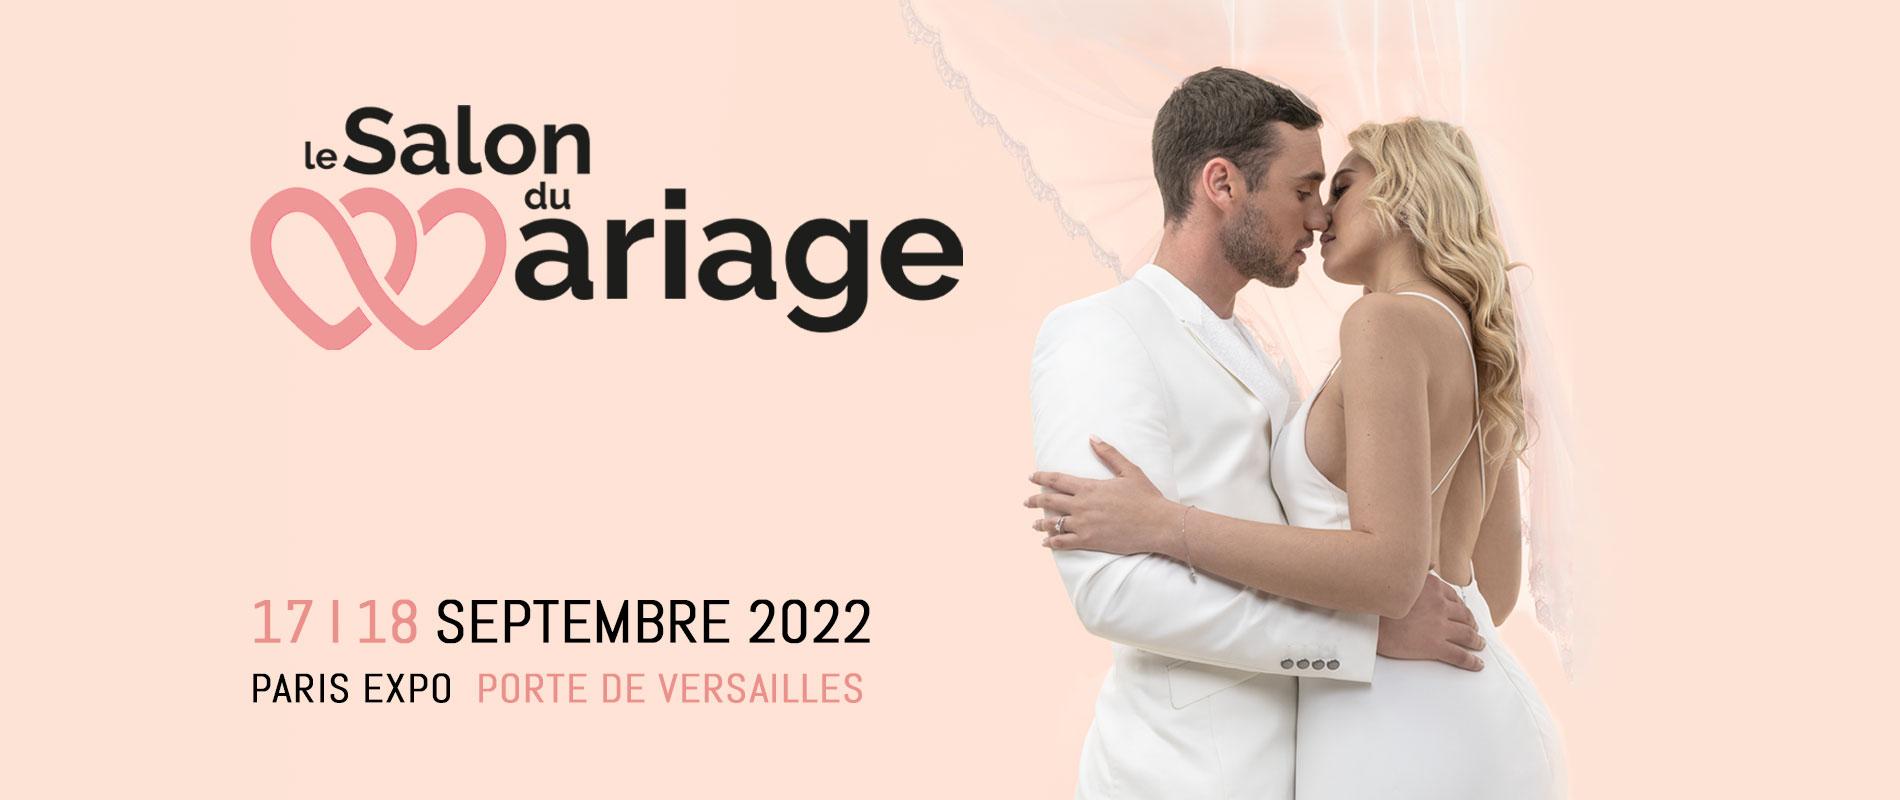 Salon du mariage septembre 2022 paris